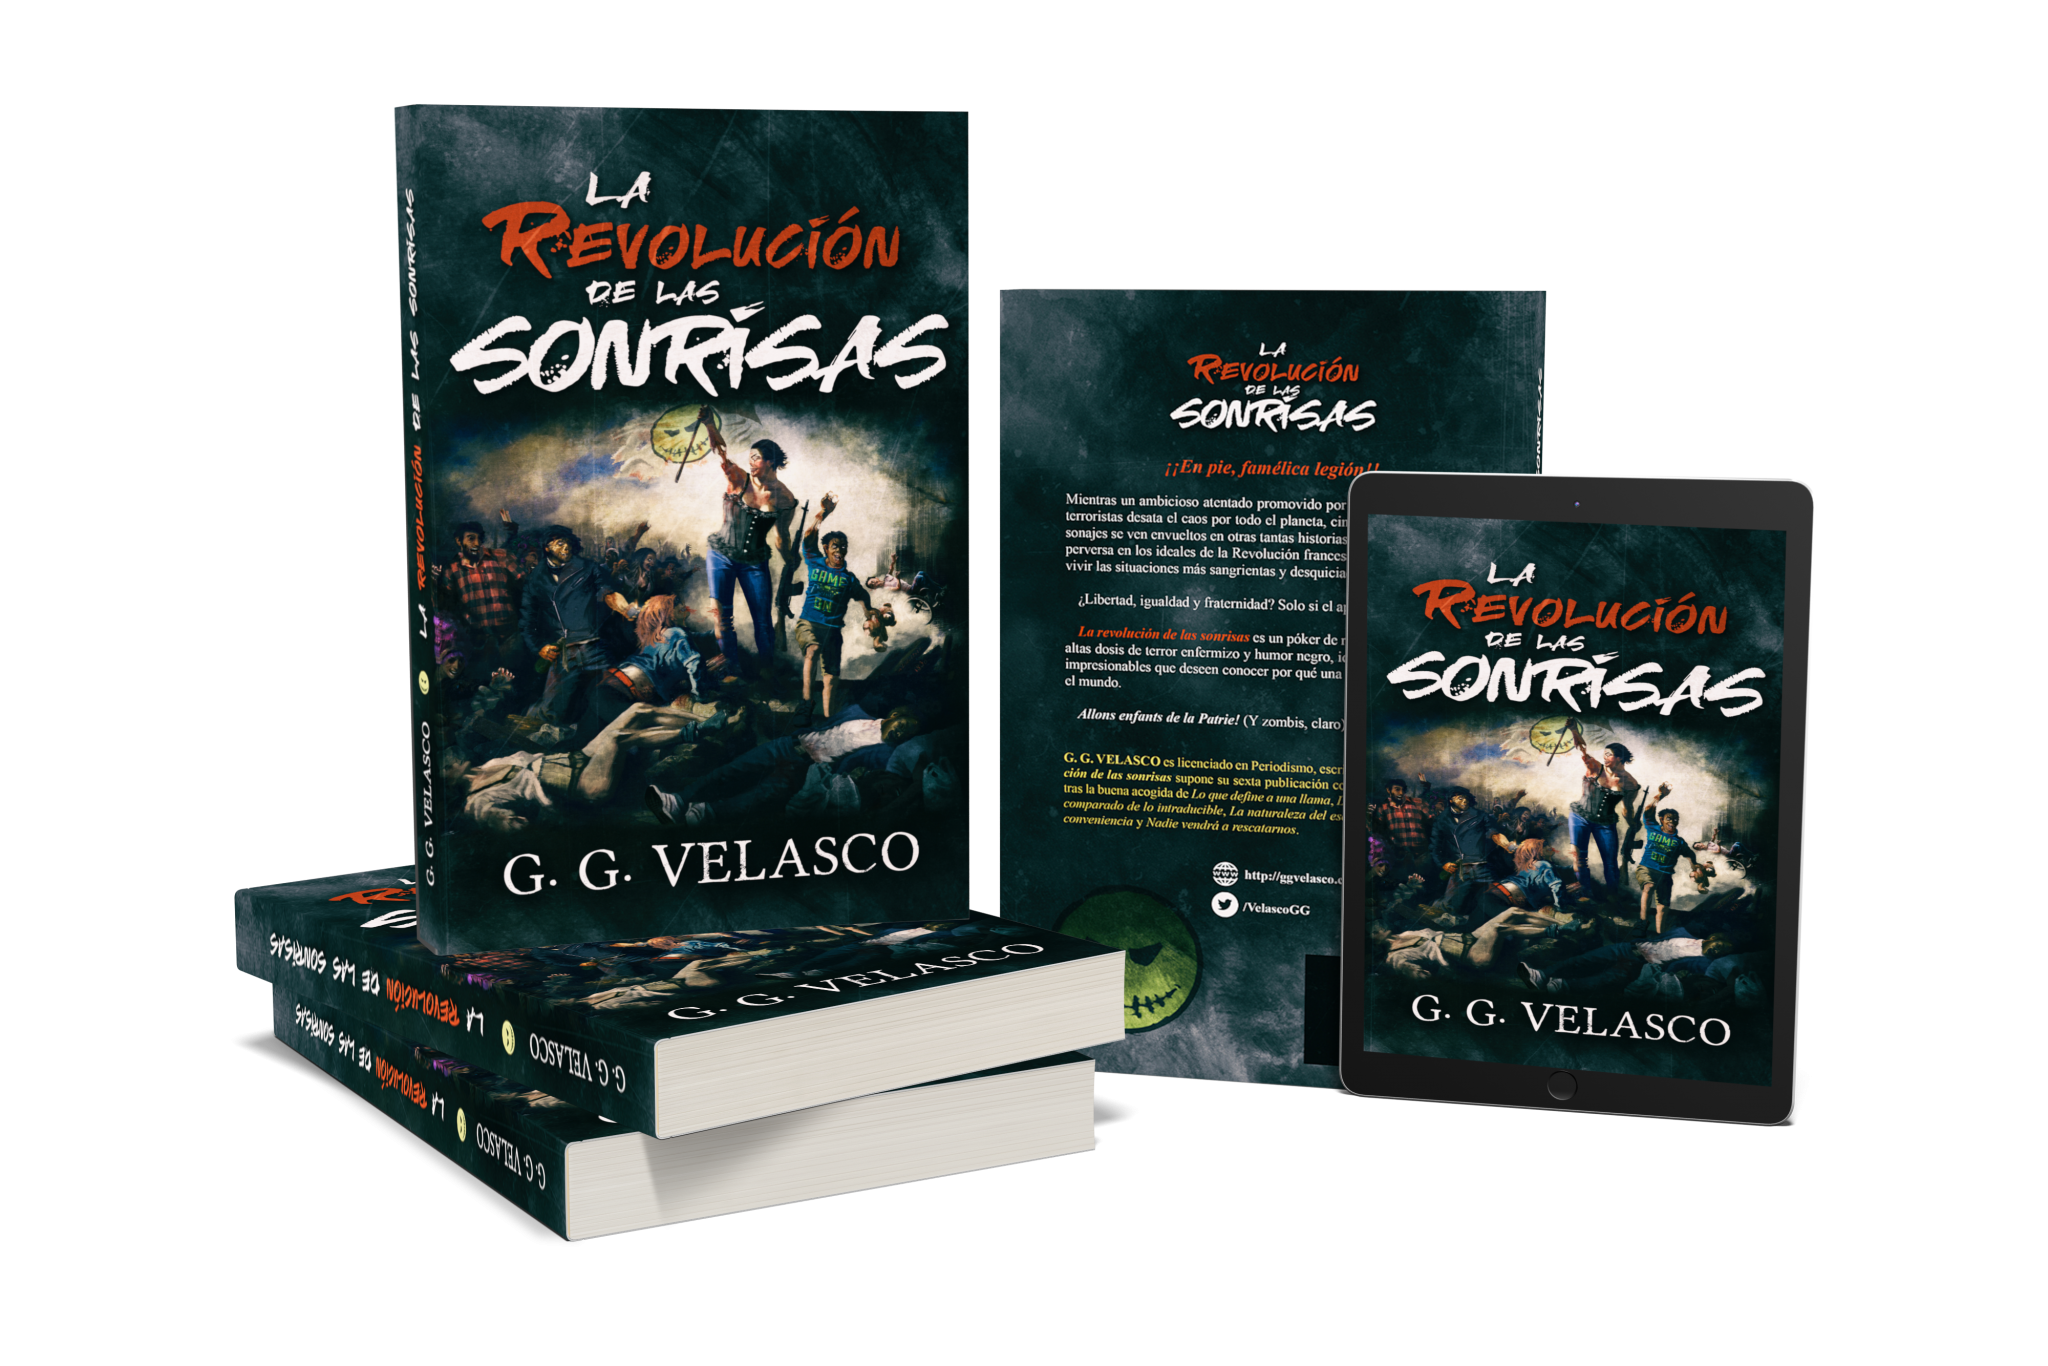 La revolución de las sonrisas es un libro de relatos de terror y zombies del escritor G.G. Velasco